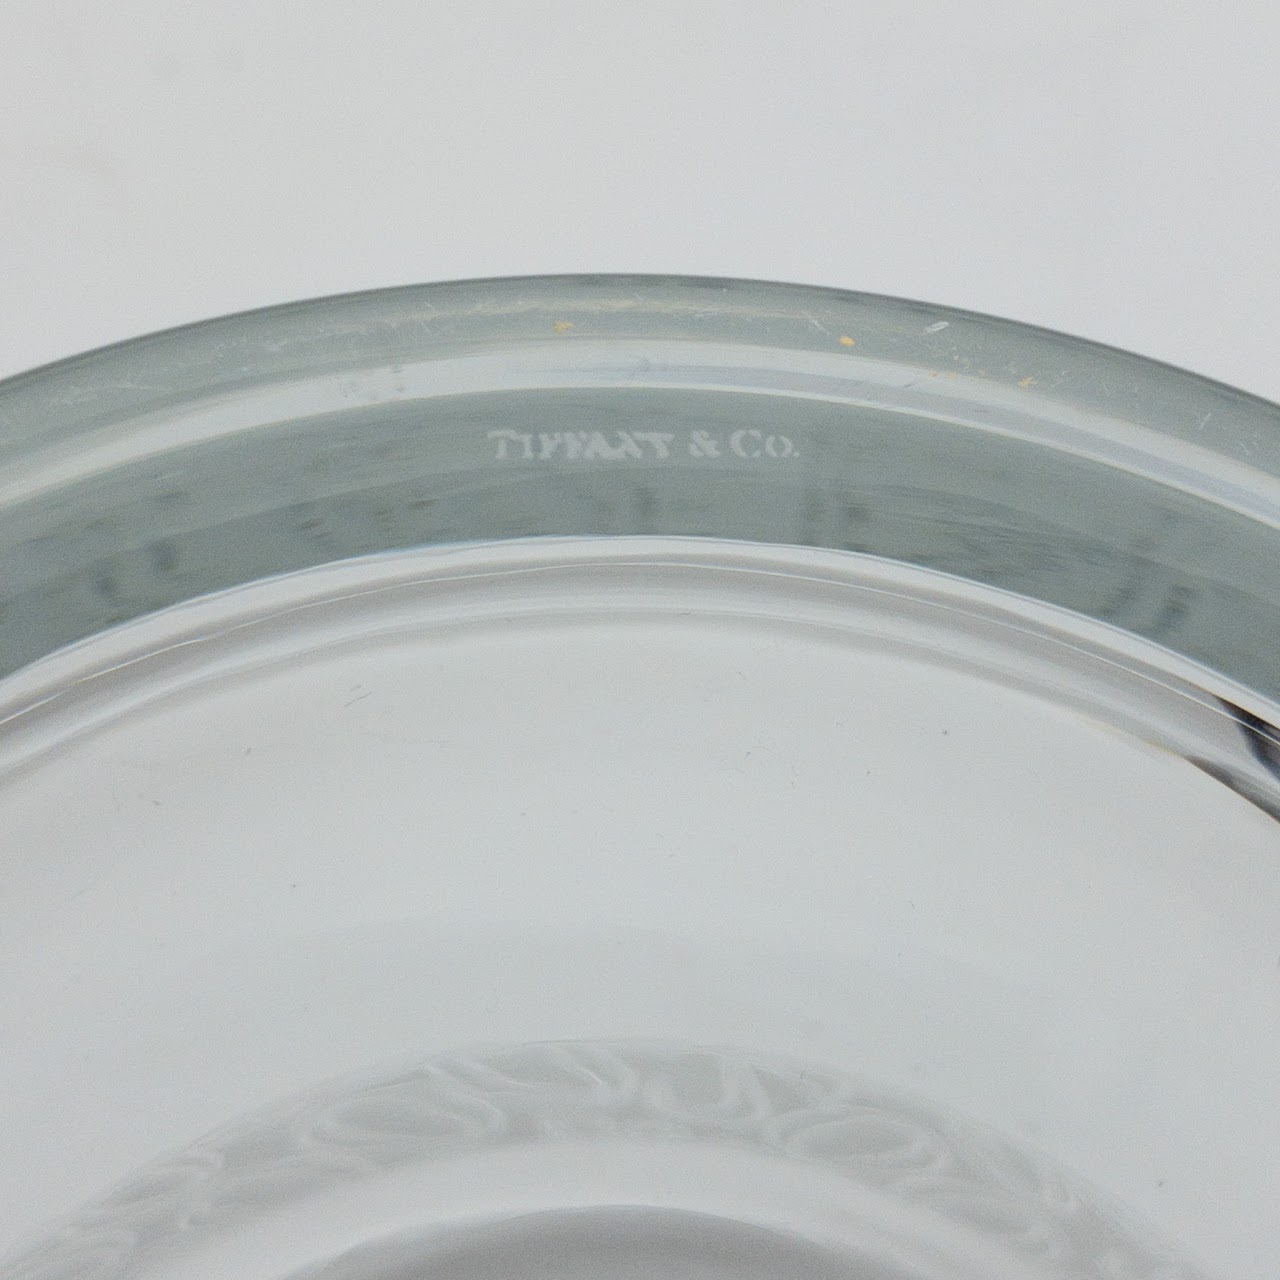 Tiffany & Co. '2000' Scroll Handled Ice Bucket